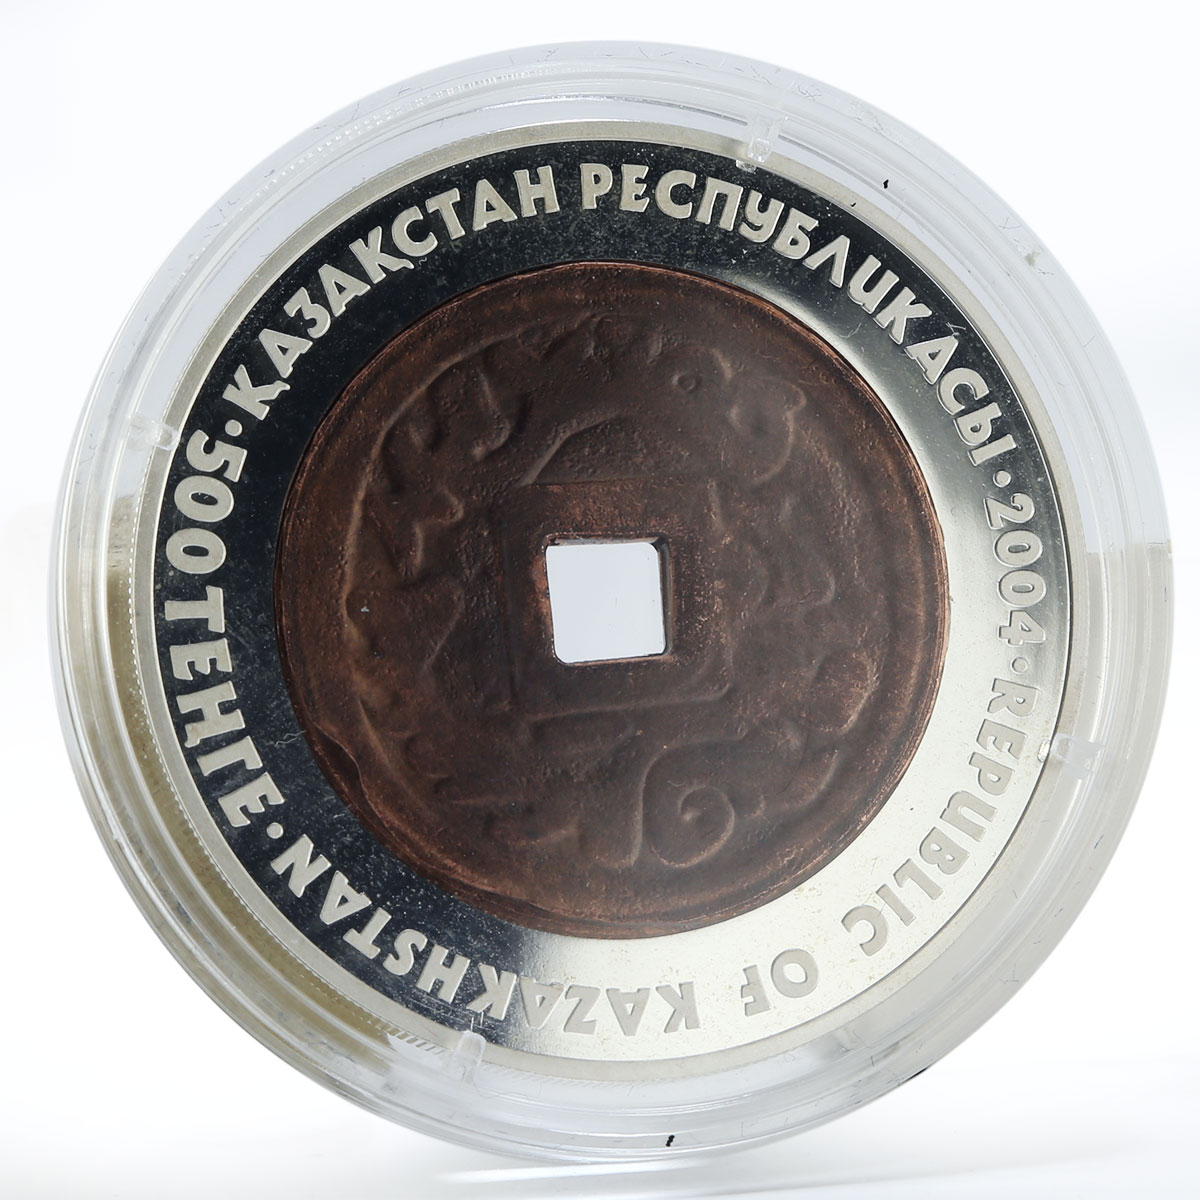 Kazakhstan 500 tenge Denga ancient series proof silver coin 2004